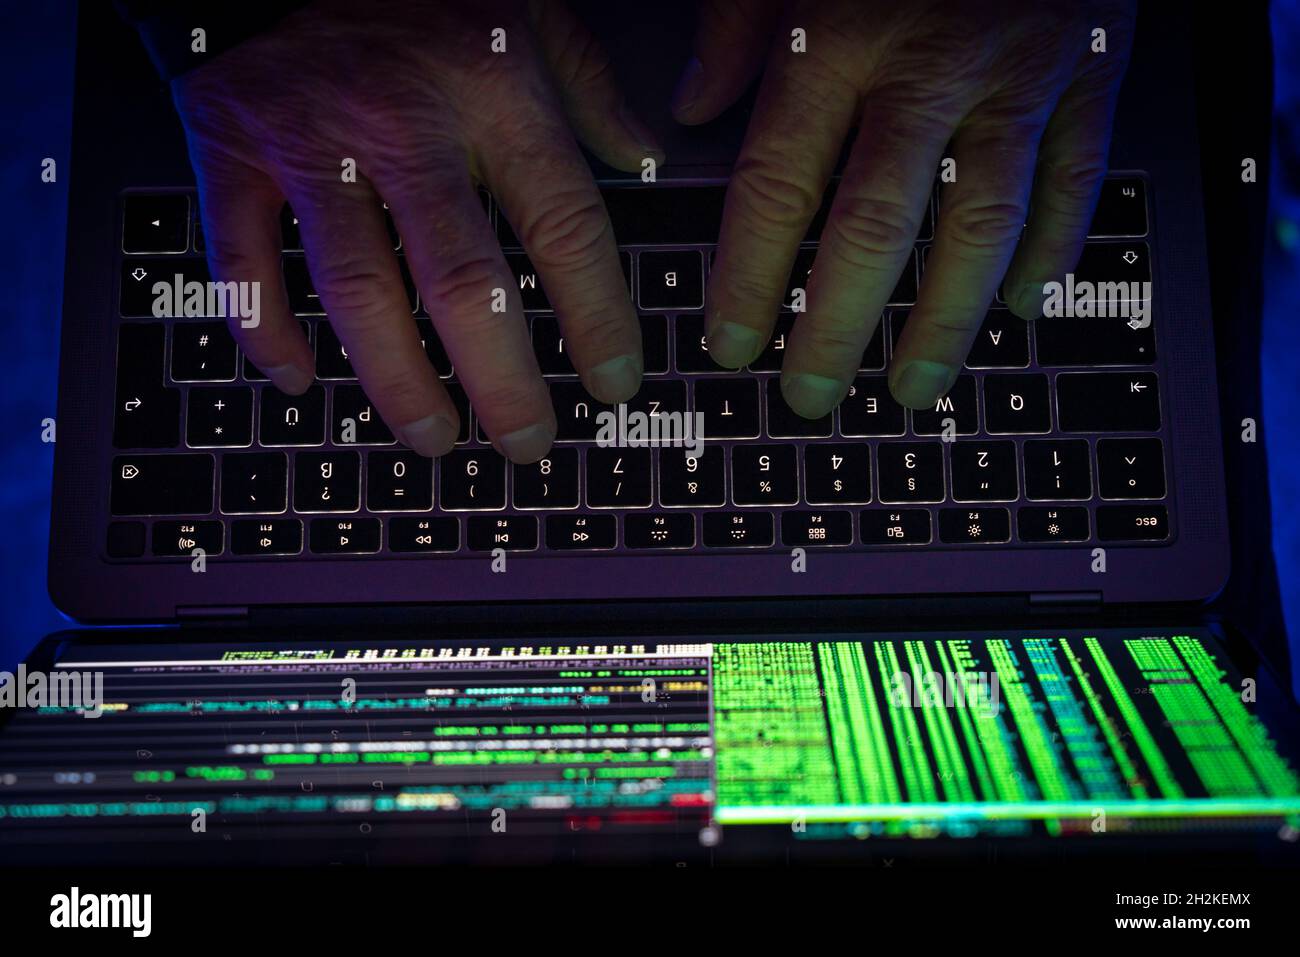 Immagine simbolica cyber attacco, criminalità informatica, cybercrimine, computer hacker attacco una rete, computer, infrastruttura IT Foto Stock